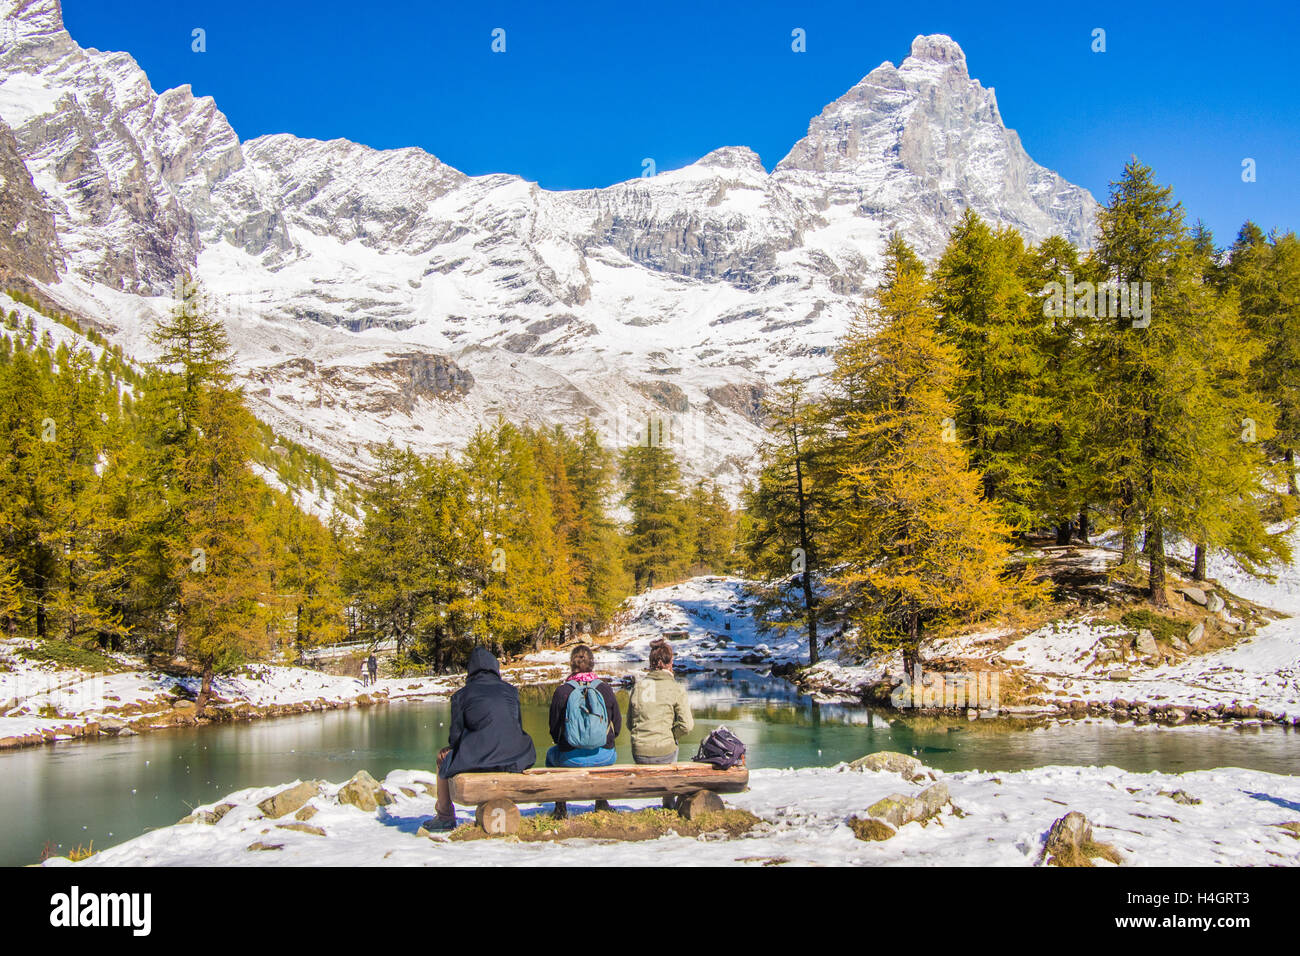 Lago Blu (Lago Azul) con la montaña Cervino (alias 'Matterhorn' en Suiza) detrás, Valle de Aosta, Italia. Amigos sentados en un banco. Foto de stock